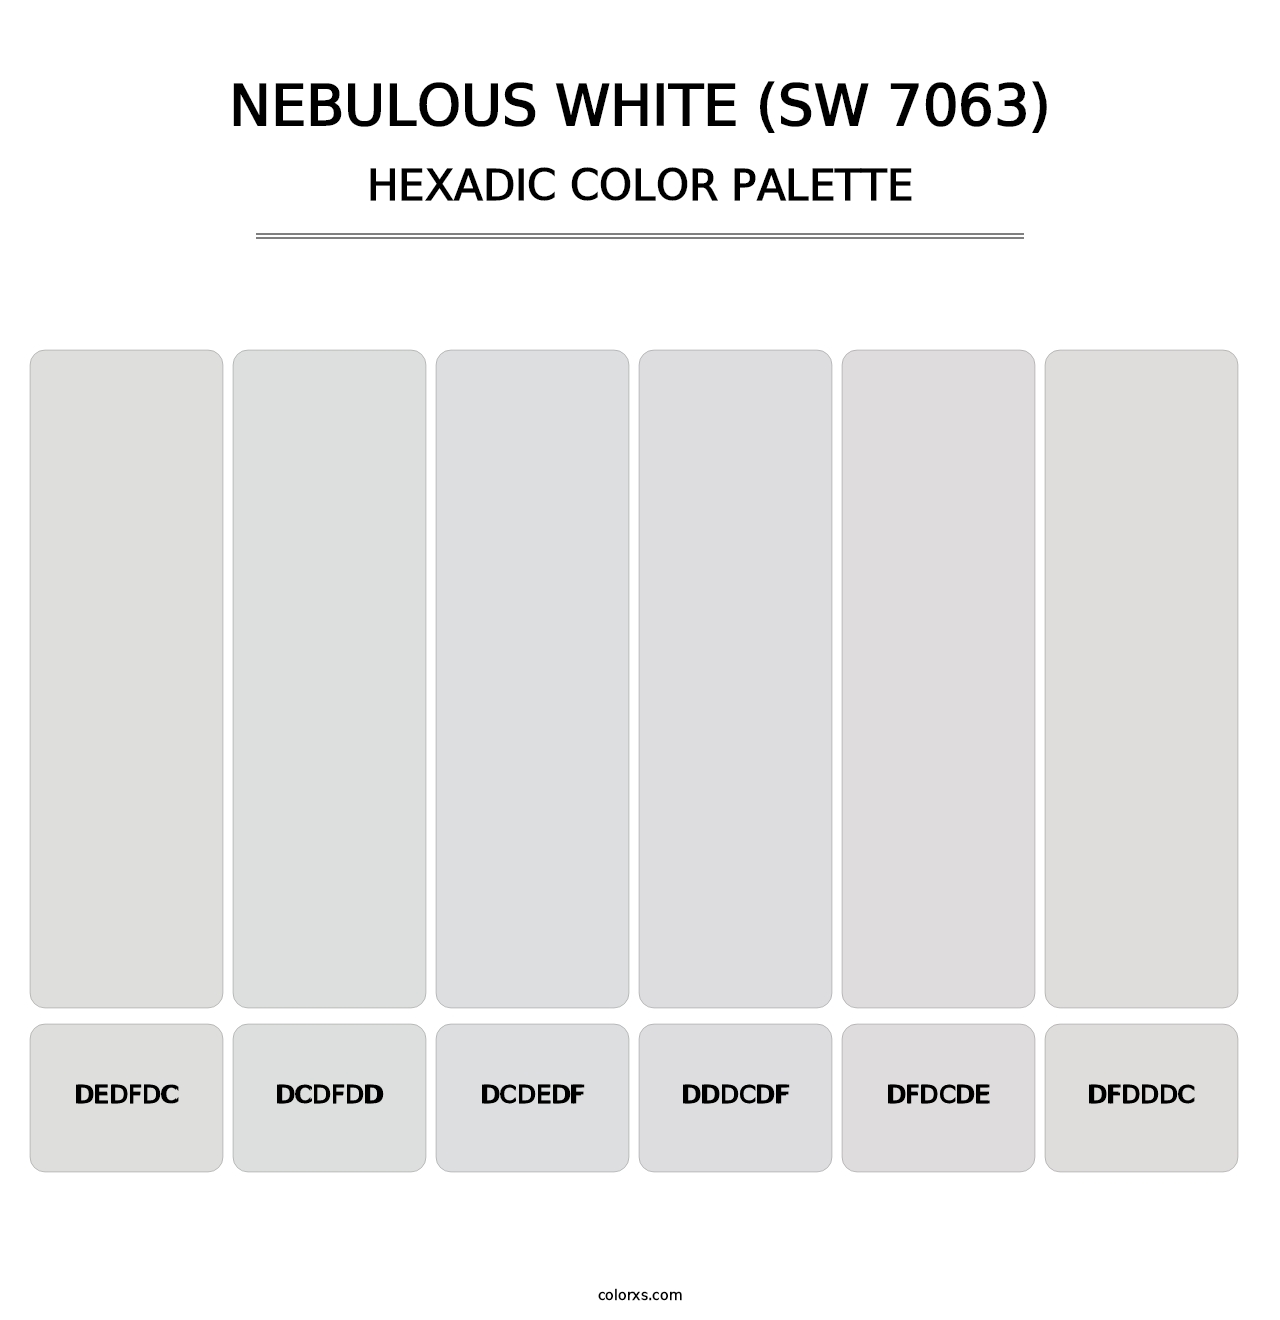 Nebulous White (SW 7063) - Hexadic Color Palette